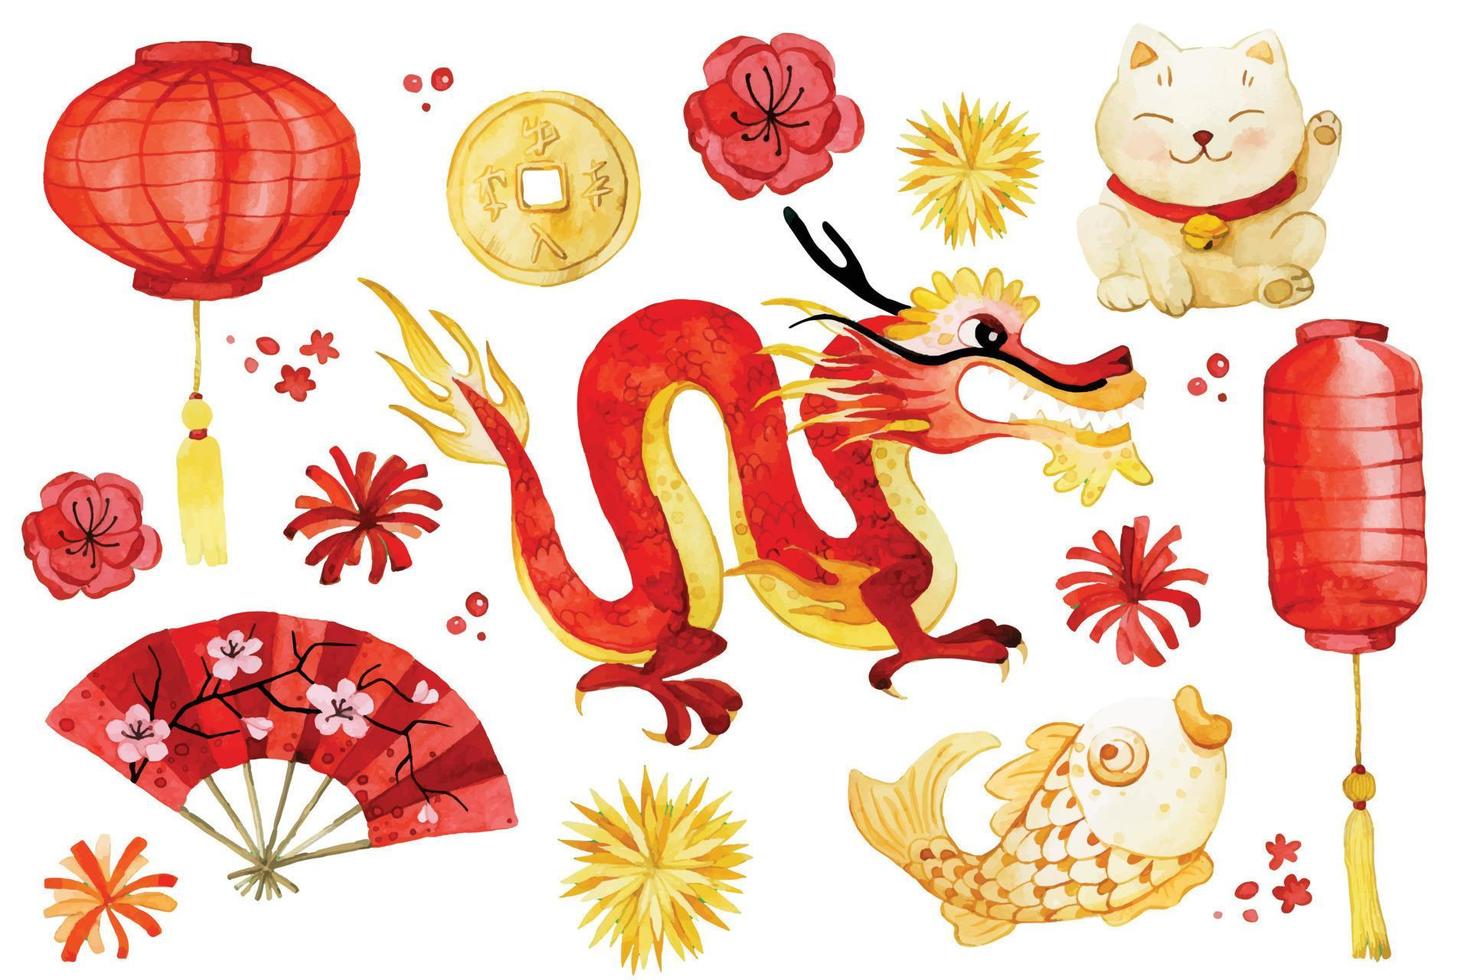 desenho em aquarela. conjunto de clipart de ano novo chinês. desenhos de dragão chinês fofo, lanternas, fogos de artifício na cor vermelha e dourada vetor